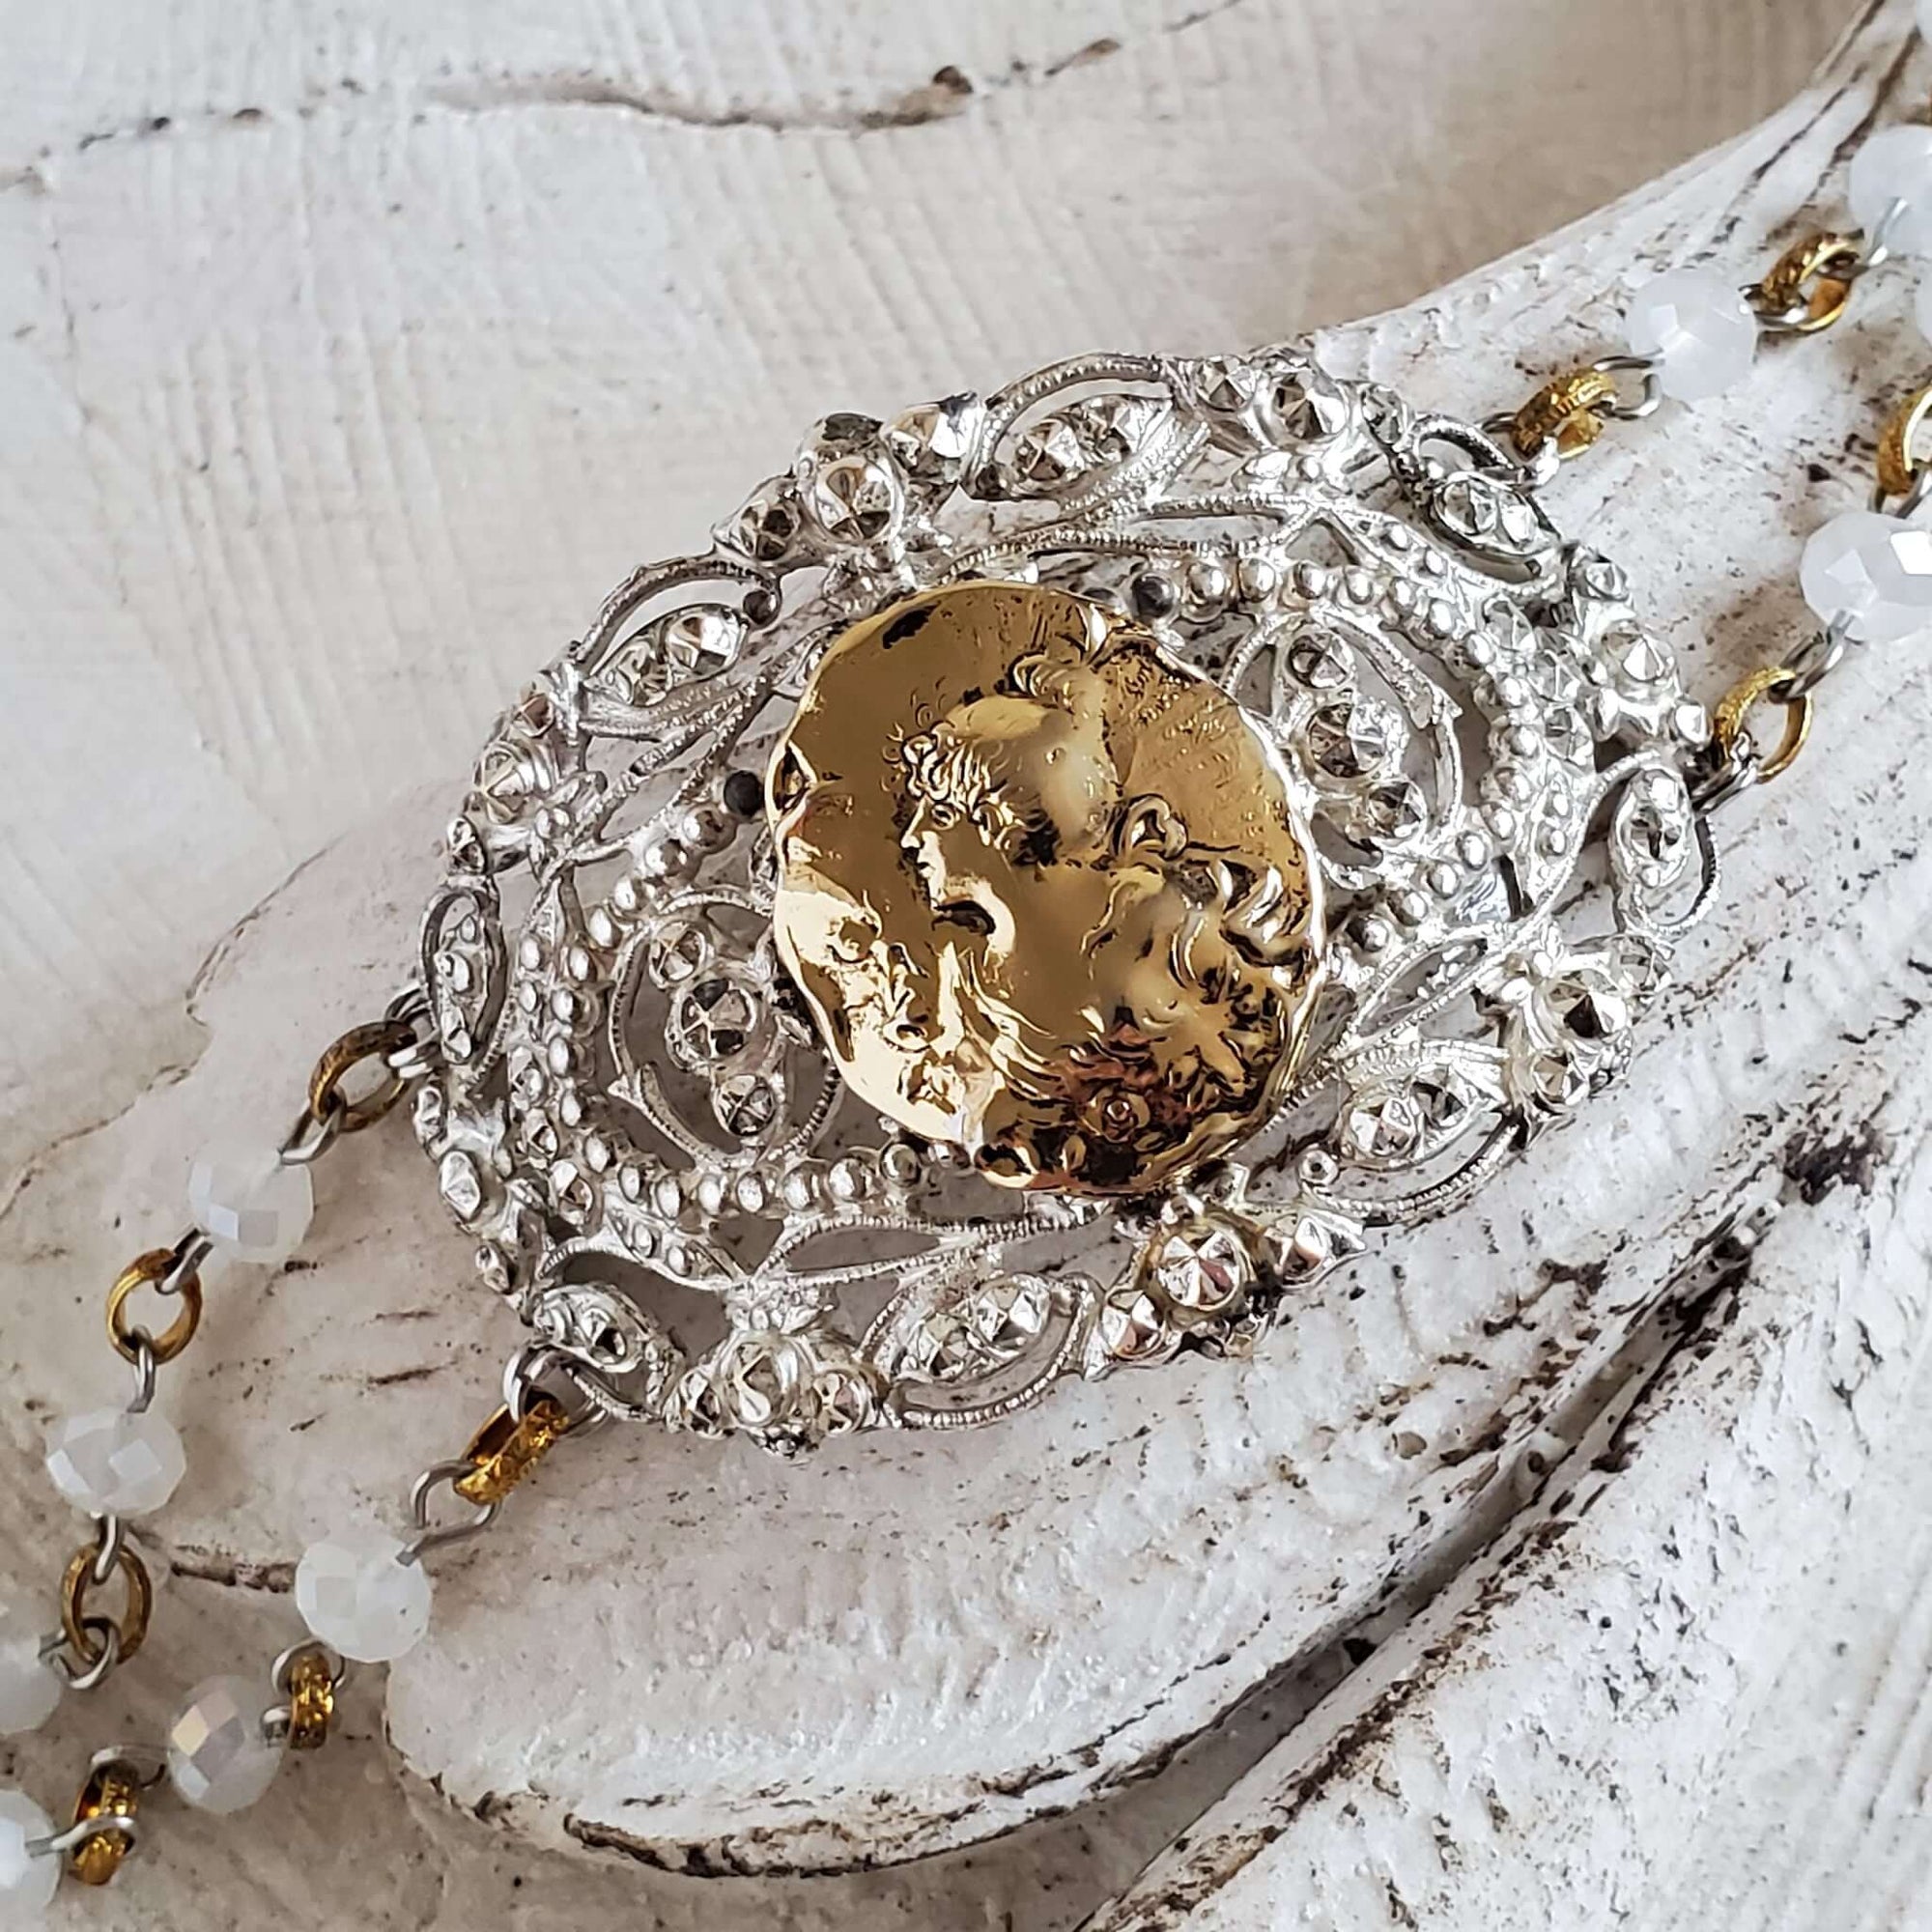 Antique Silver Buckle Cuff Bracelet with Goldtone Portrait Pendant